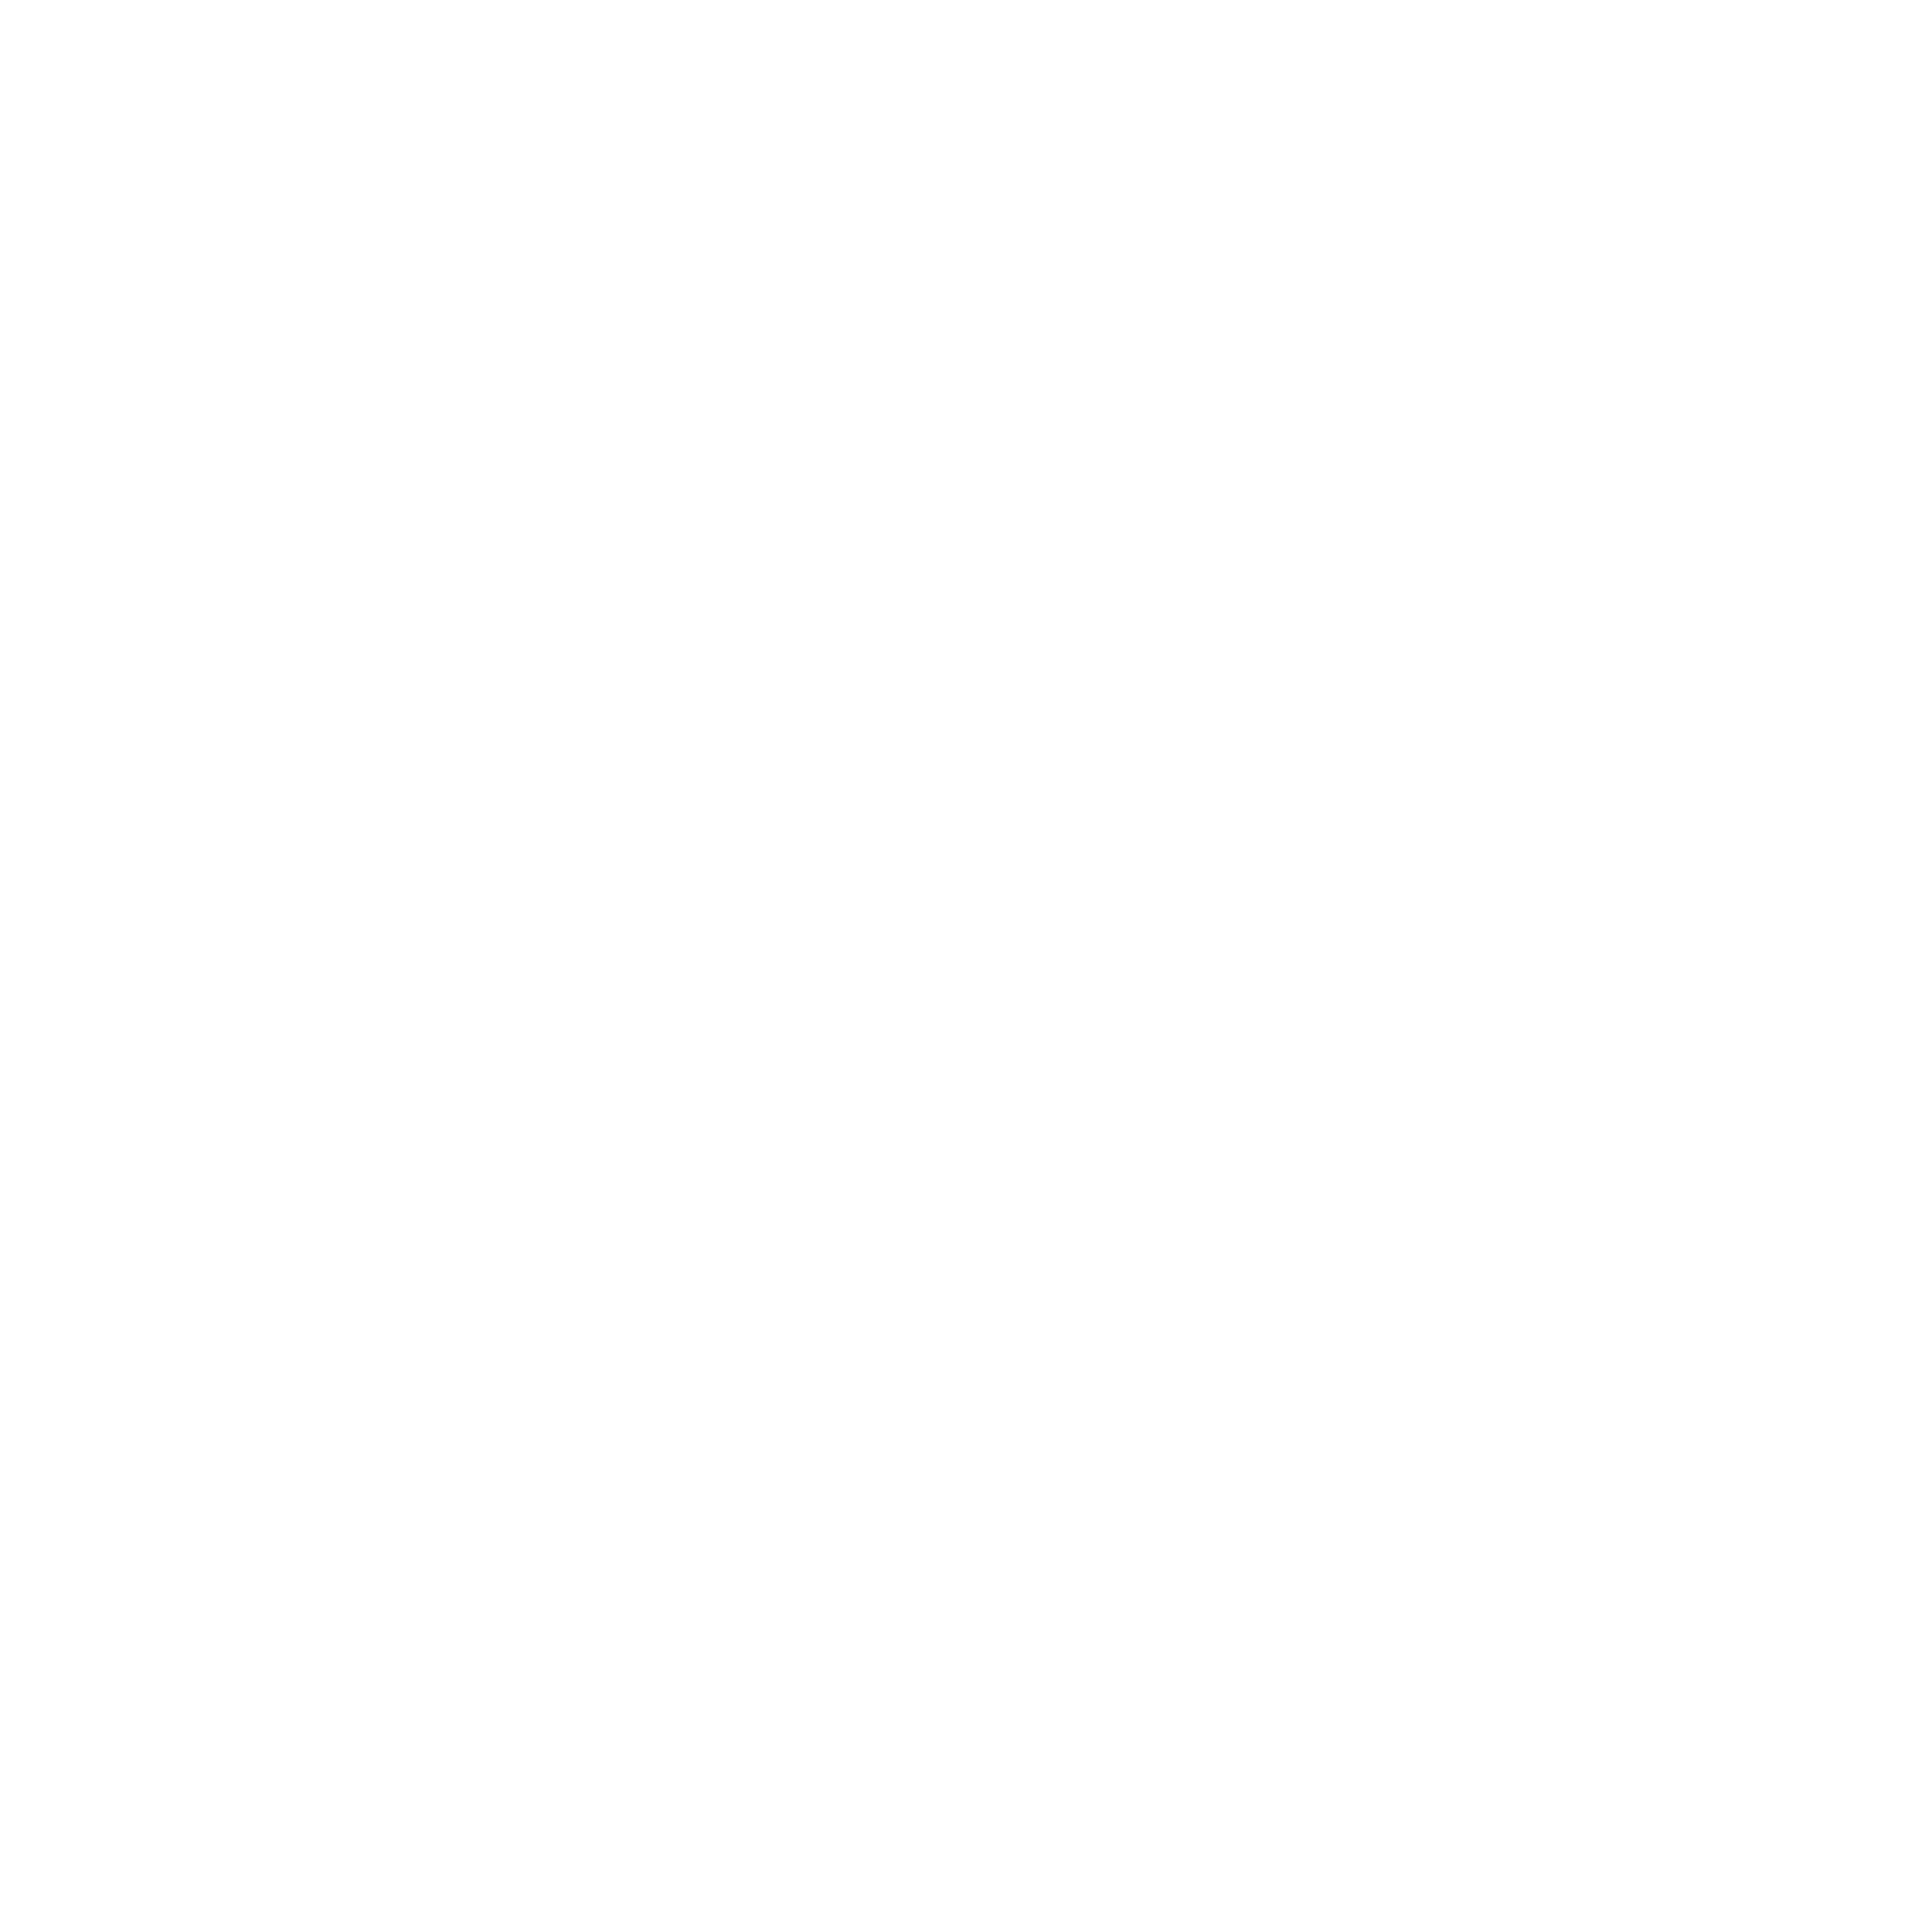 LG logo for desktop